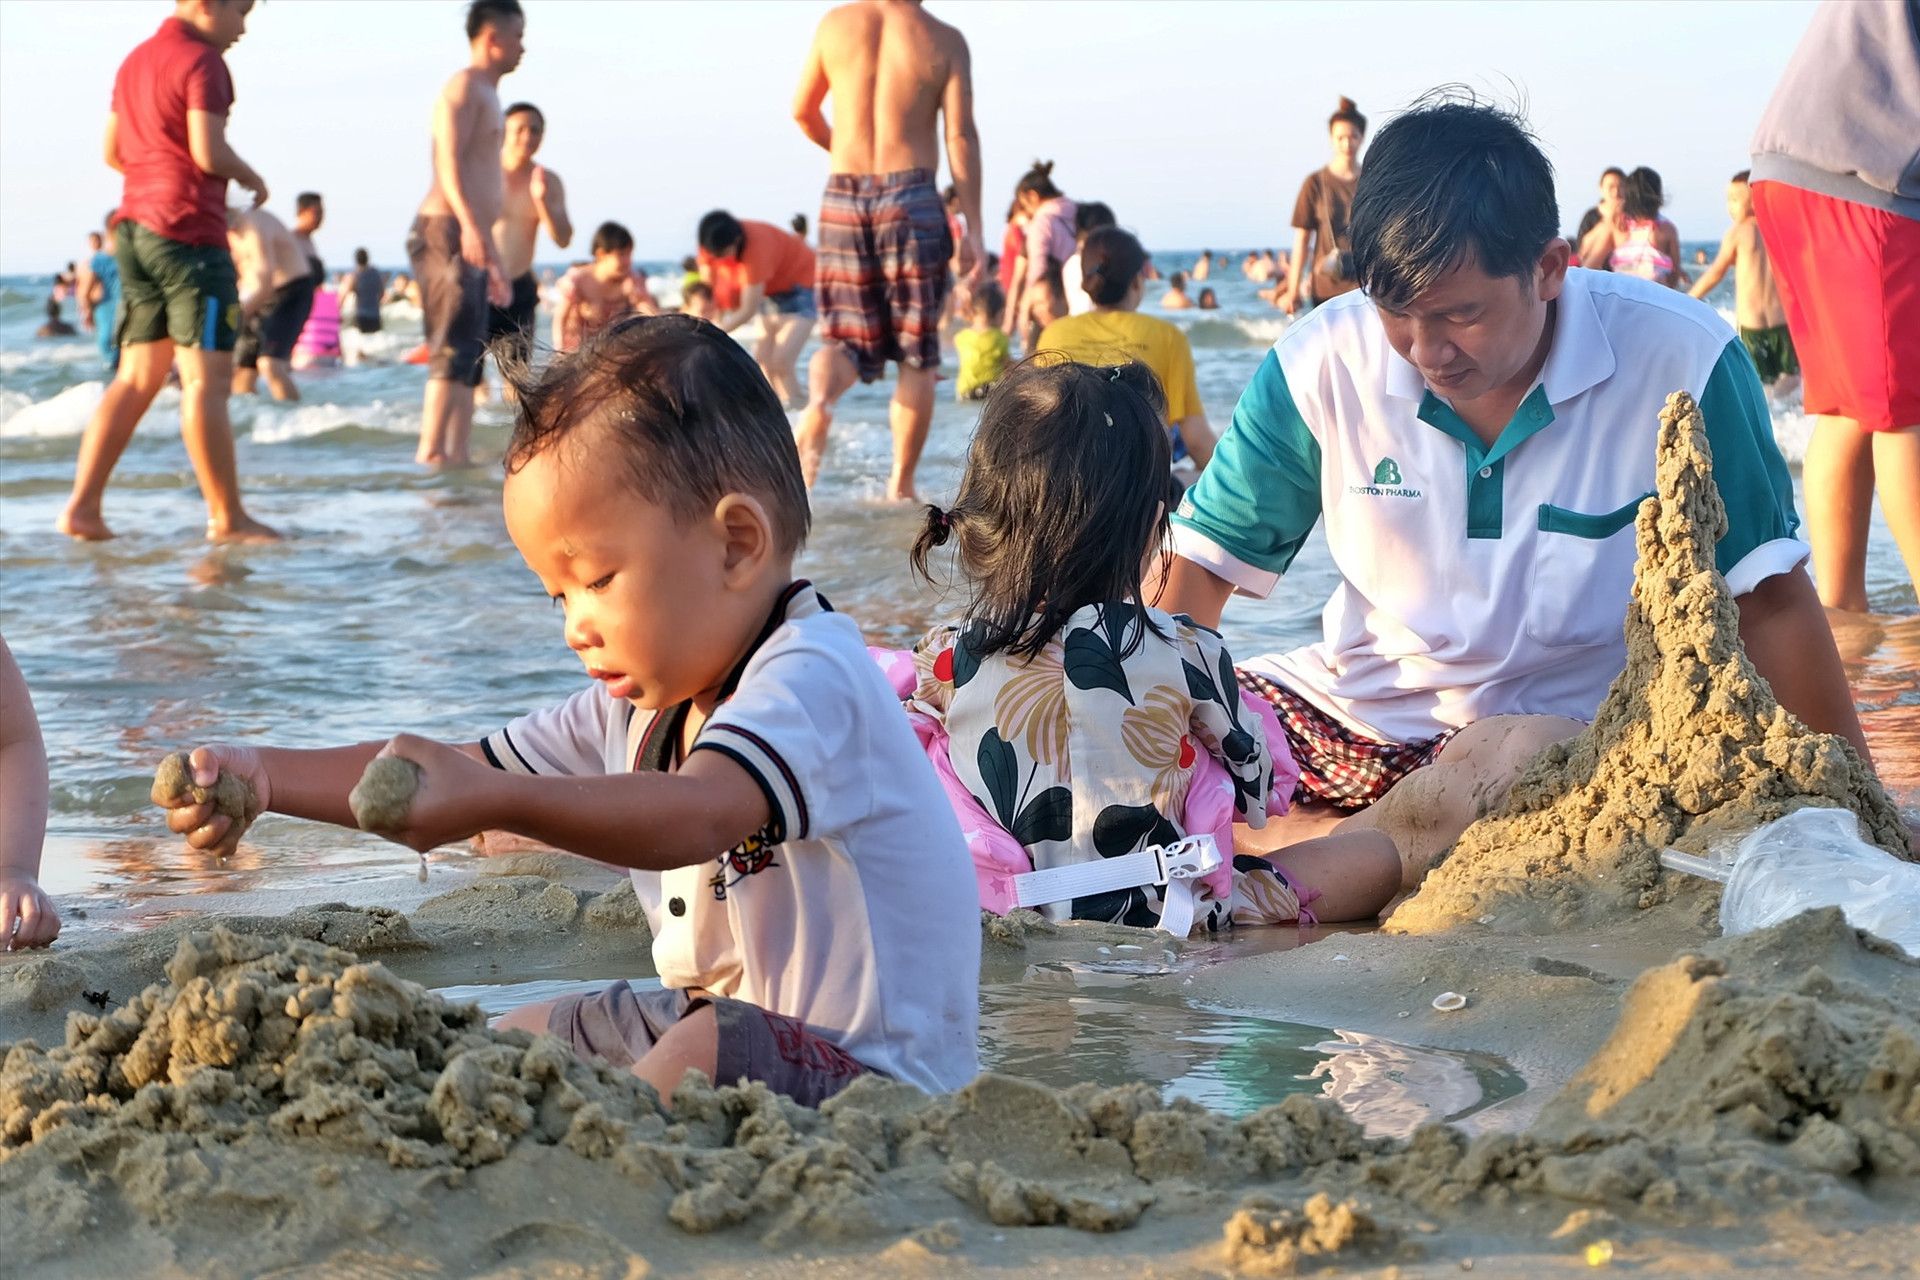 Vui chơi ở bãi biển là niềm vui của nhiều trẻ em. Ảnh: Đ.V